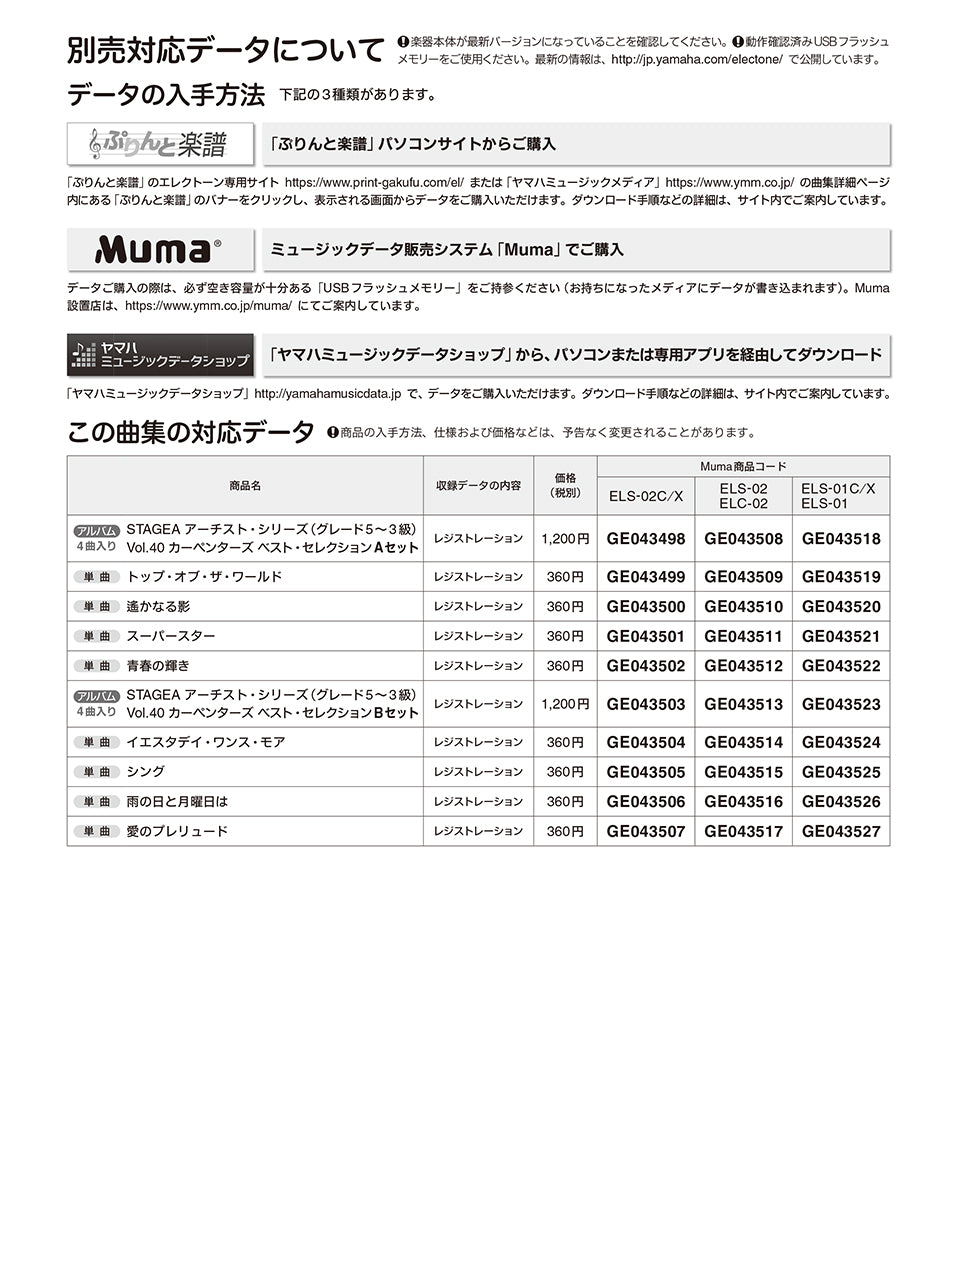 STAGEA アーチスト 5～3級 Vol.40 カーペンターズ ベスト・セレクション_1